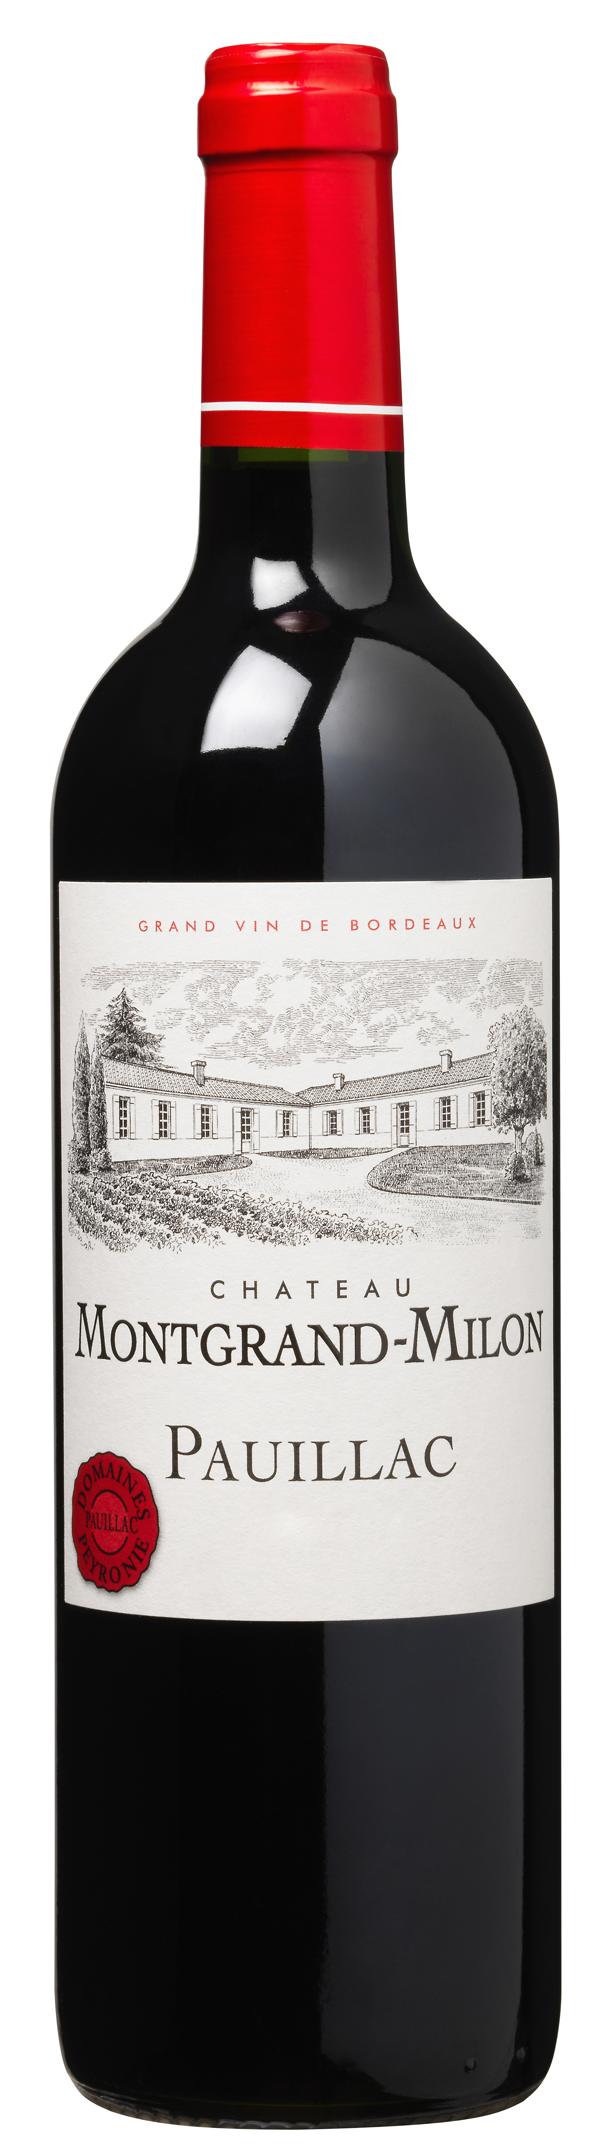 Chateau Montgrand-Milon, Pauillac 2015 75cl